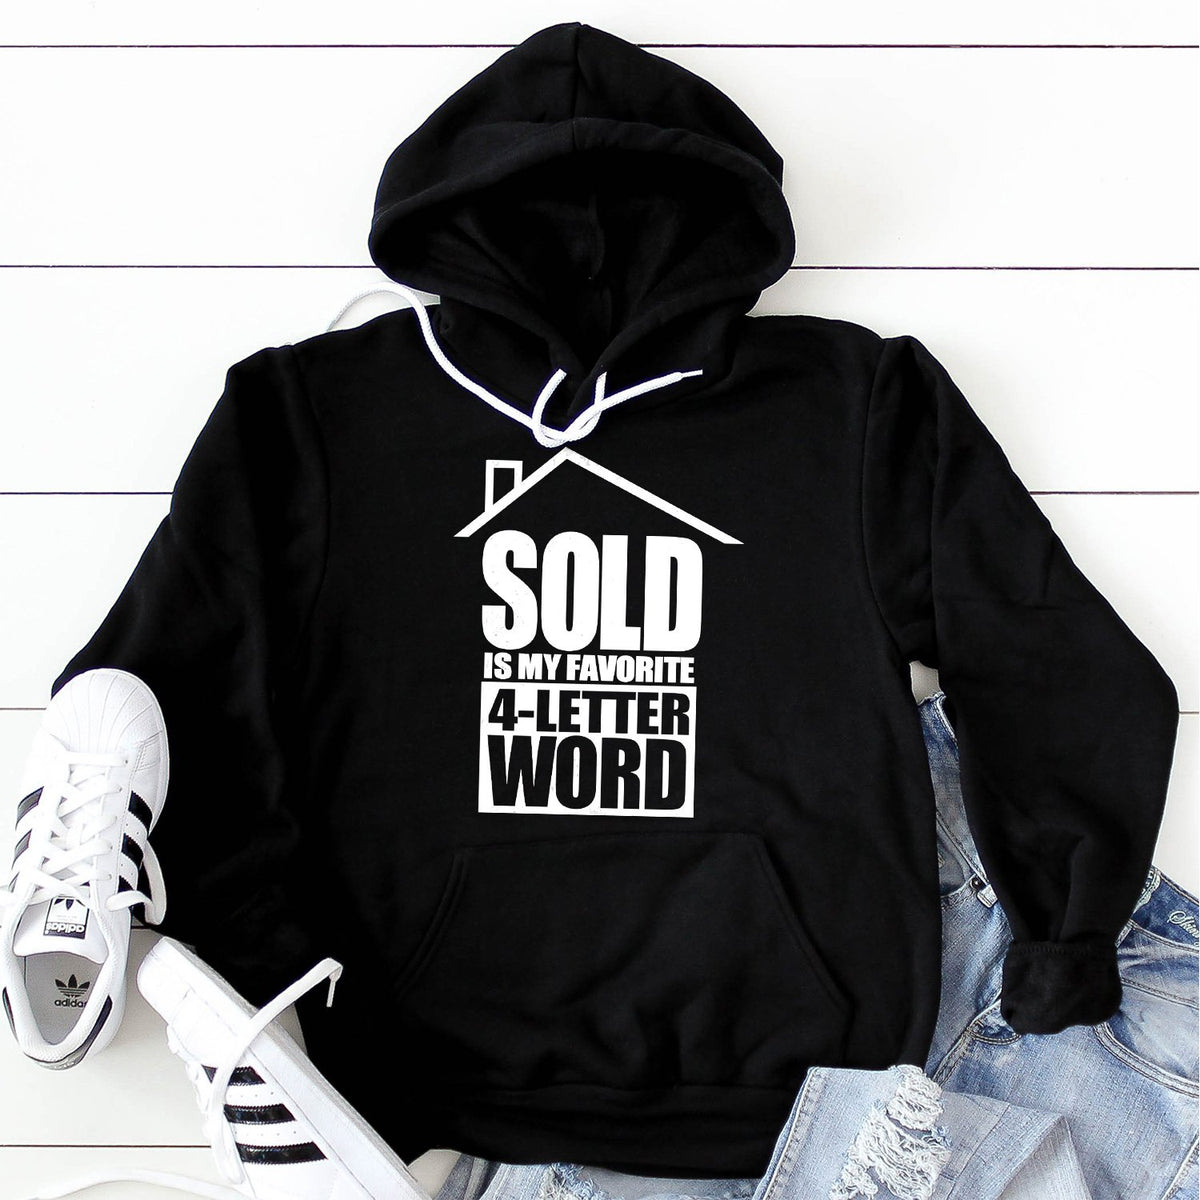 SOLD is My Favorite 4-Letter Word - Hoodie Sweatshirt